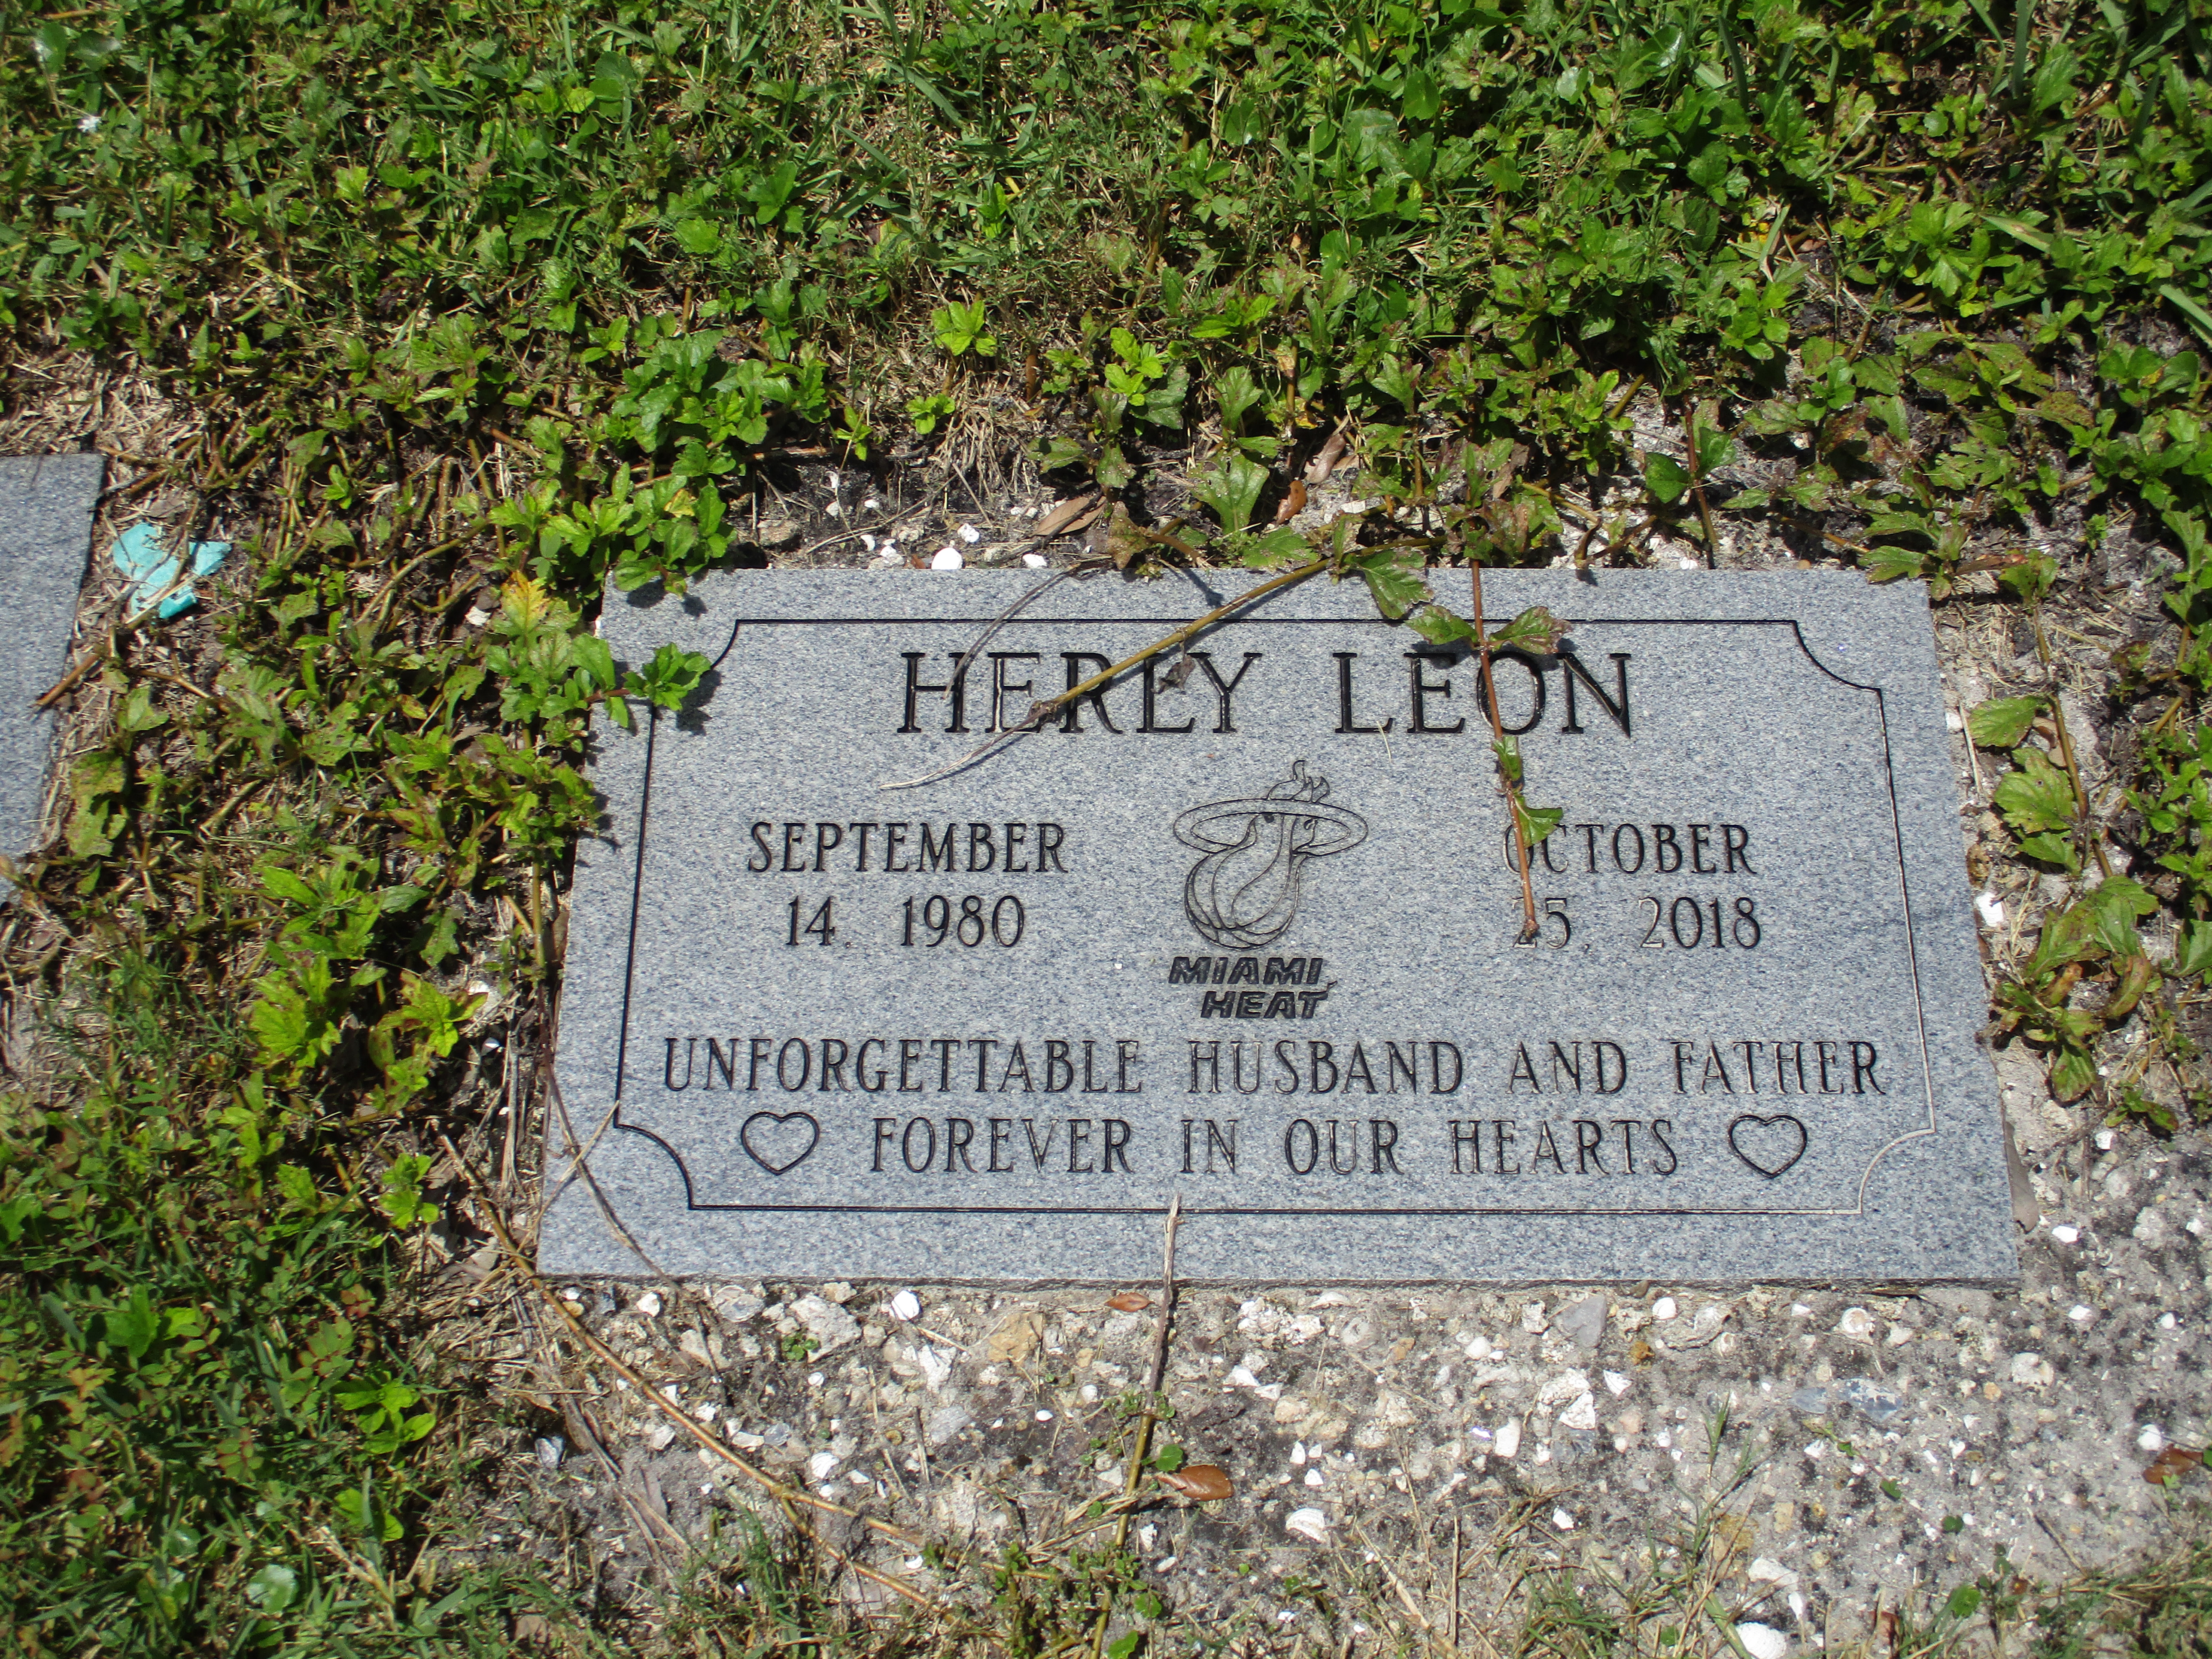 Herly Leon